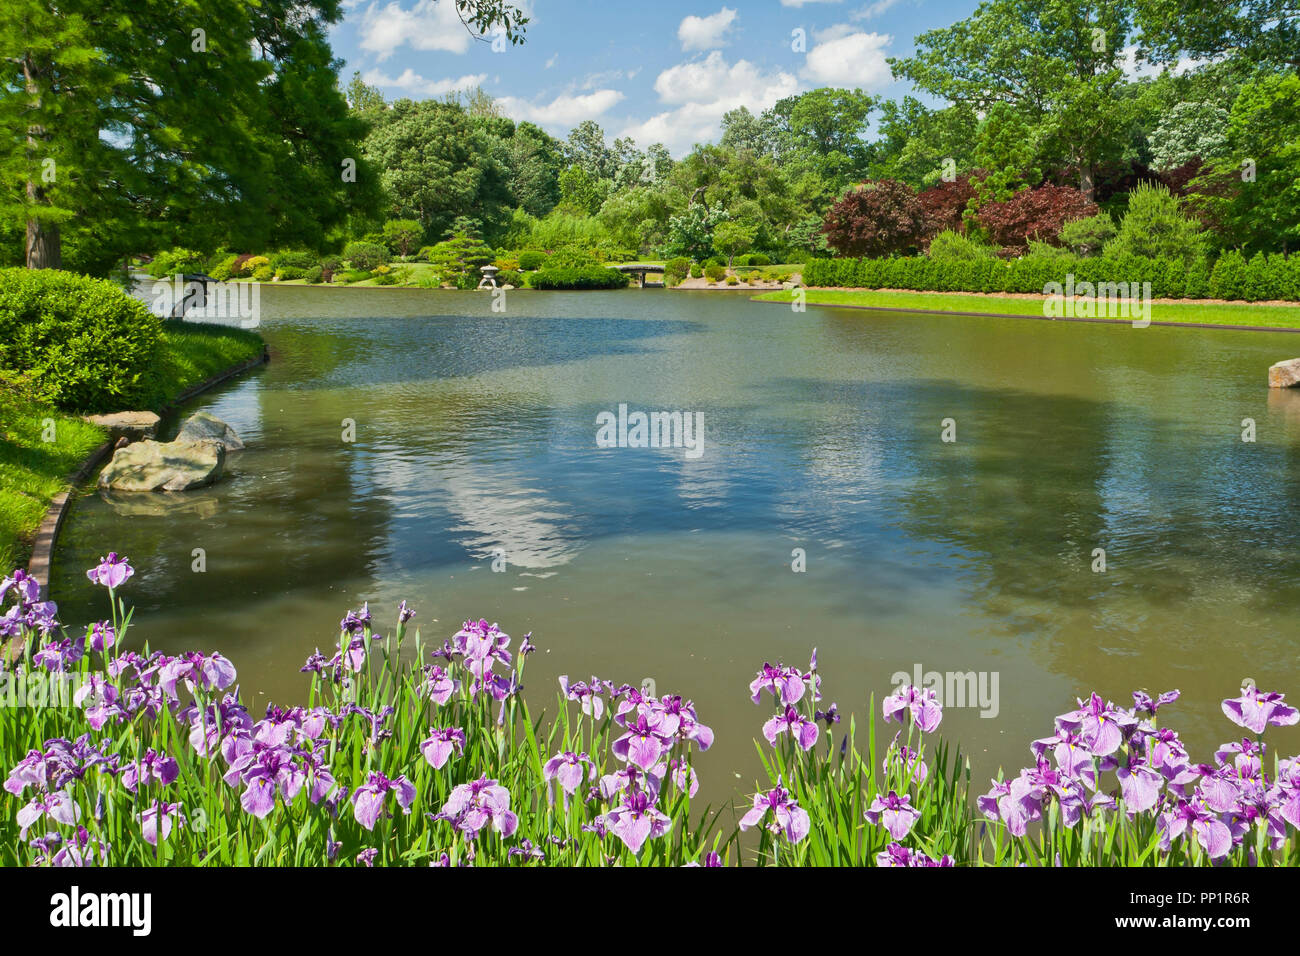 ST. LOUIS - 12 juin : puffy lumineux nuages dans le ciel bleu au-dessus et se reflètent dans le lac dans le jardin japonais du Jardin Botanique du Missouri sur le bilan à mi-J Banque D'Images